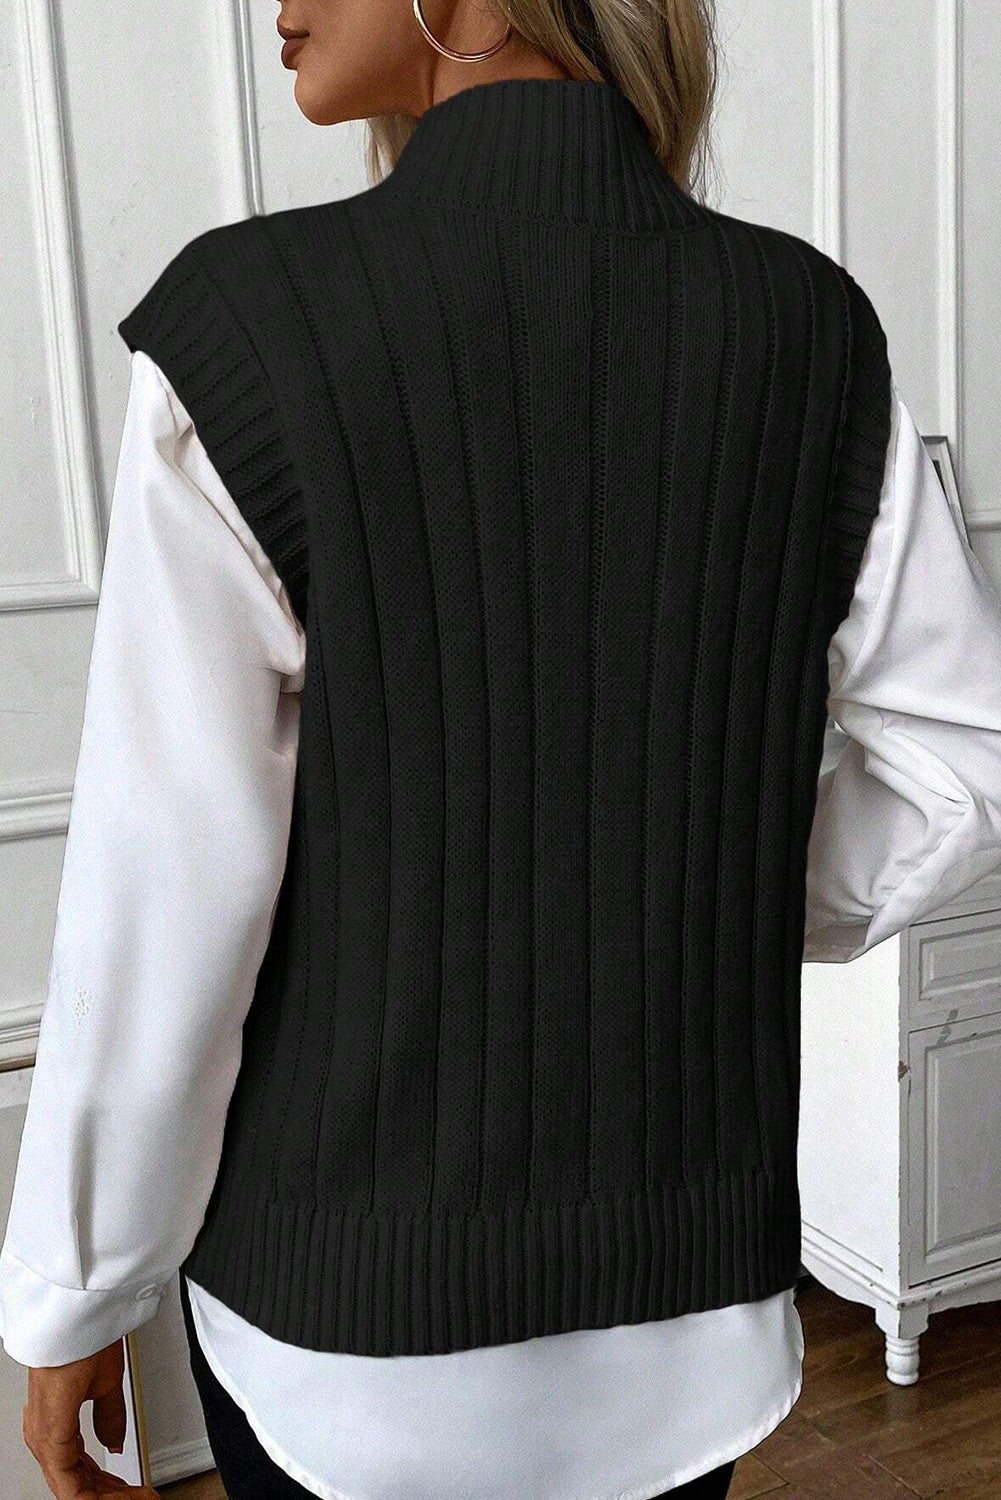 Schwarze Pulloverweste mit Zopfmuster und Stehkragen